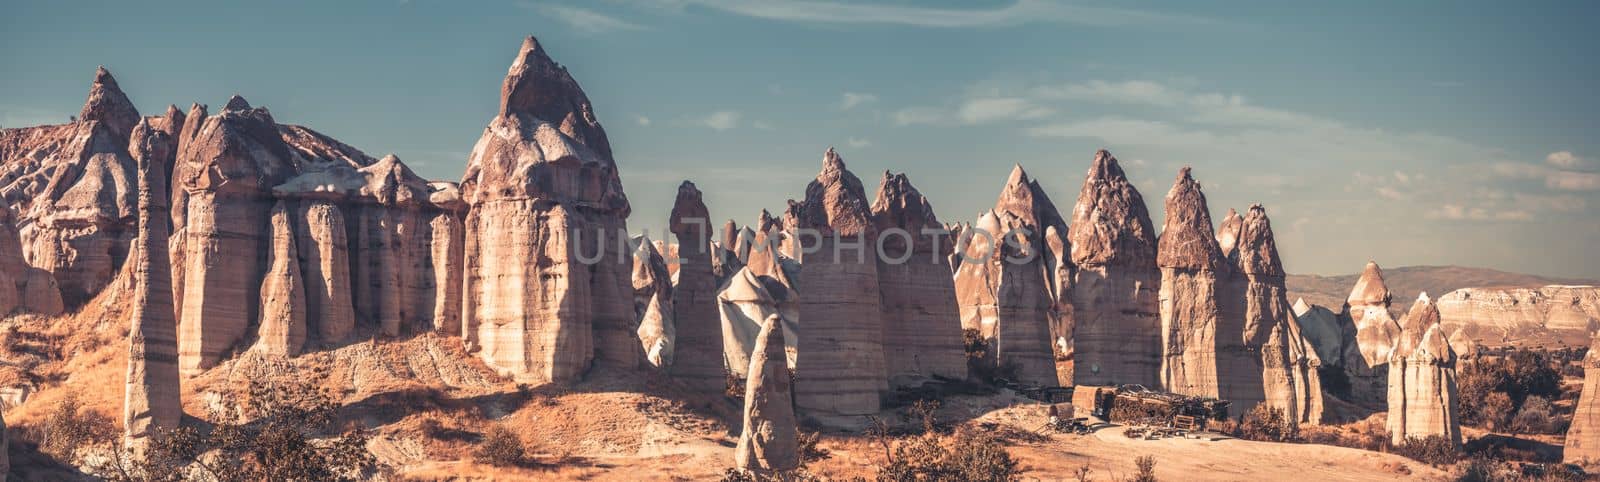 Unusual huge structures of Love valley in Cappadocia, Turkey